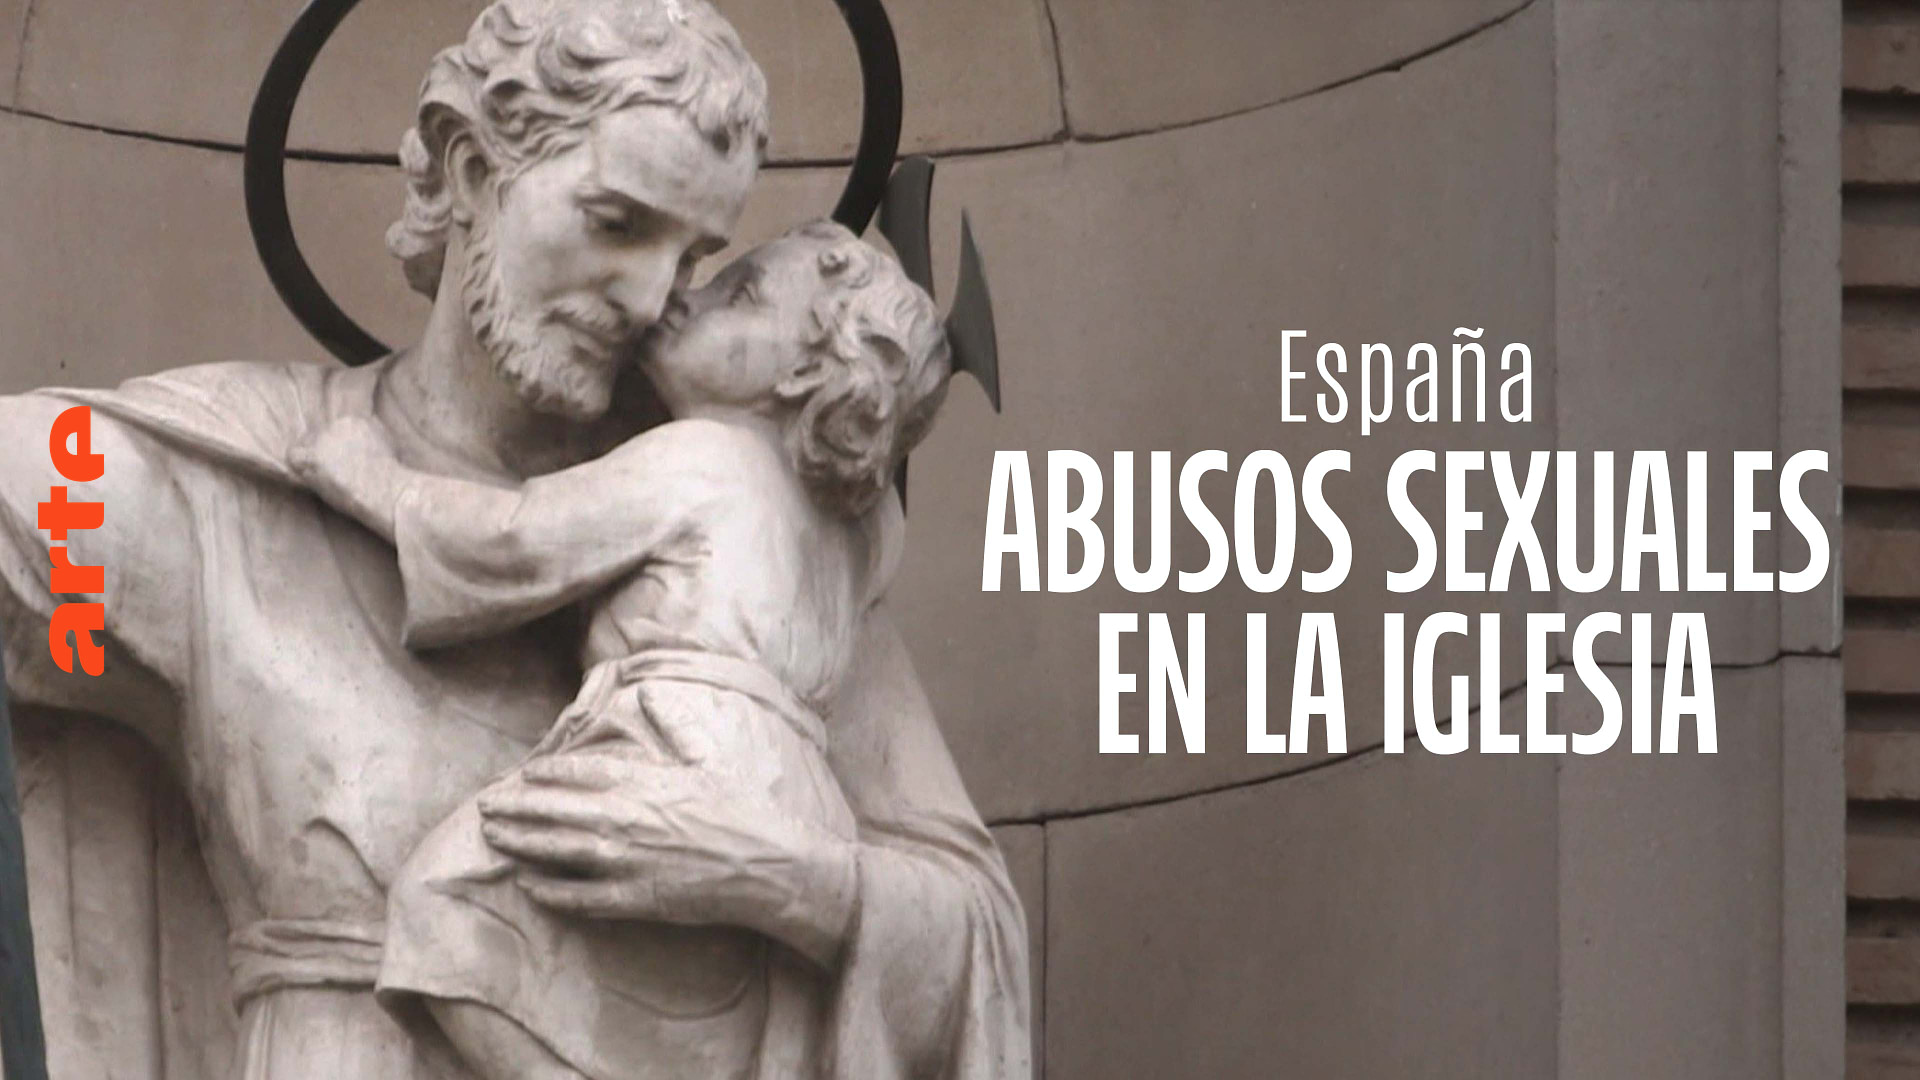 ARTE Regards - España: abusos sexuales en la Iglesia - Ver el documental completo | ARTE en español